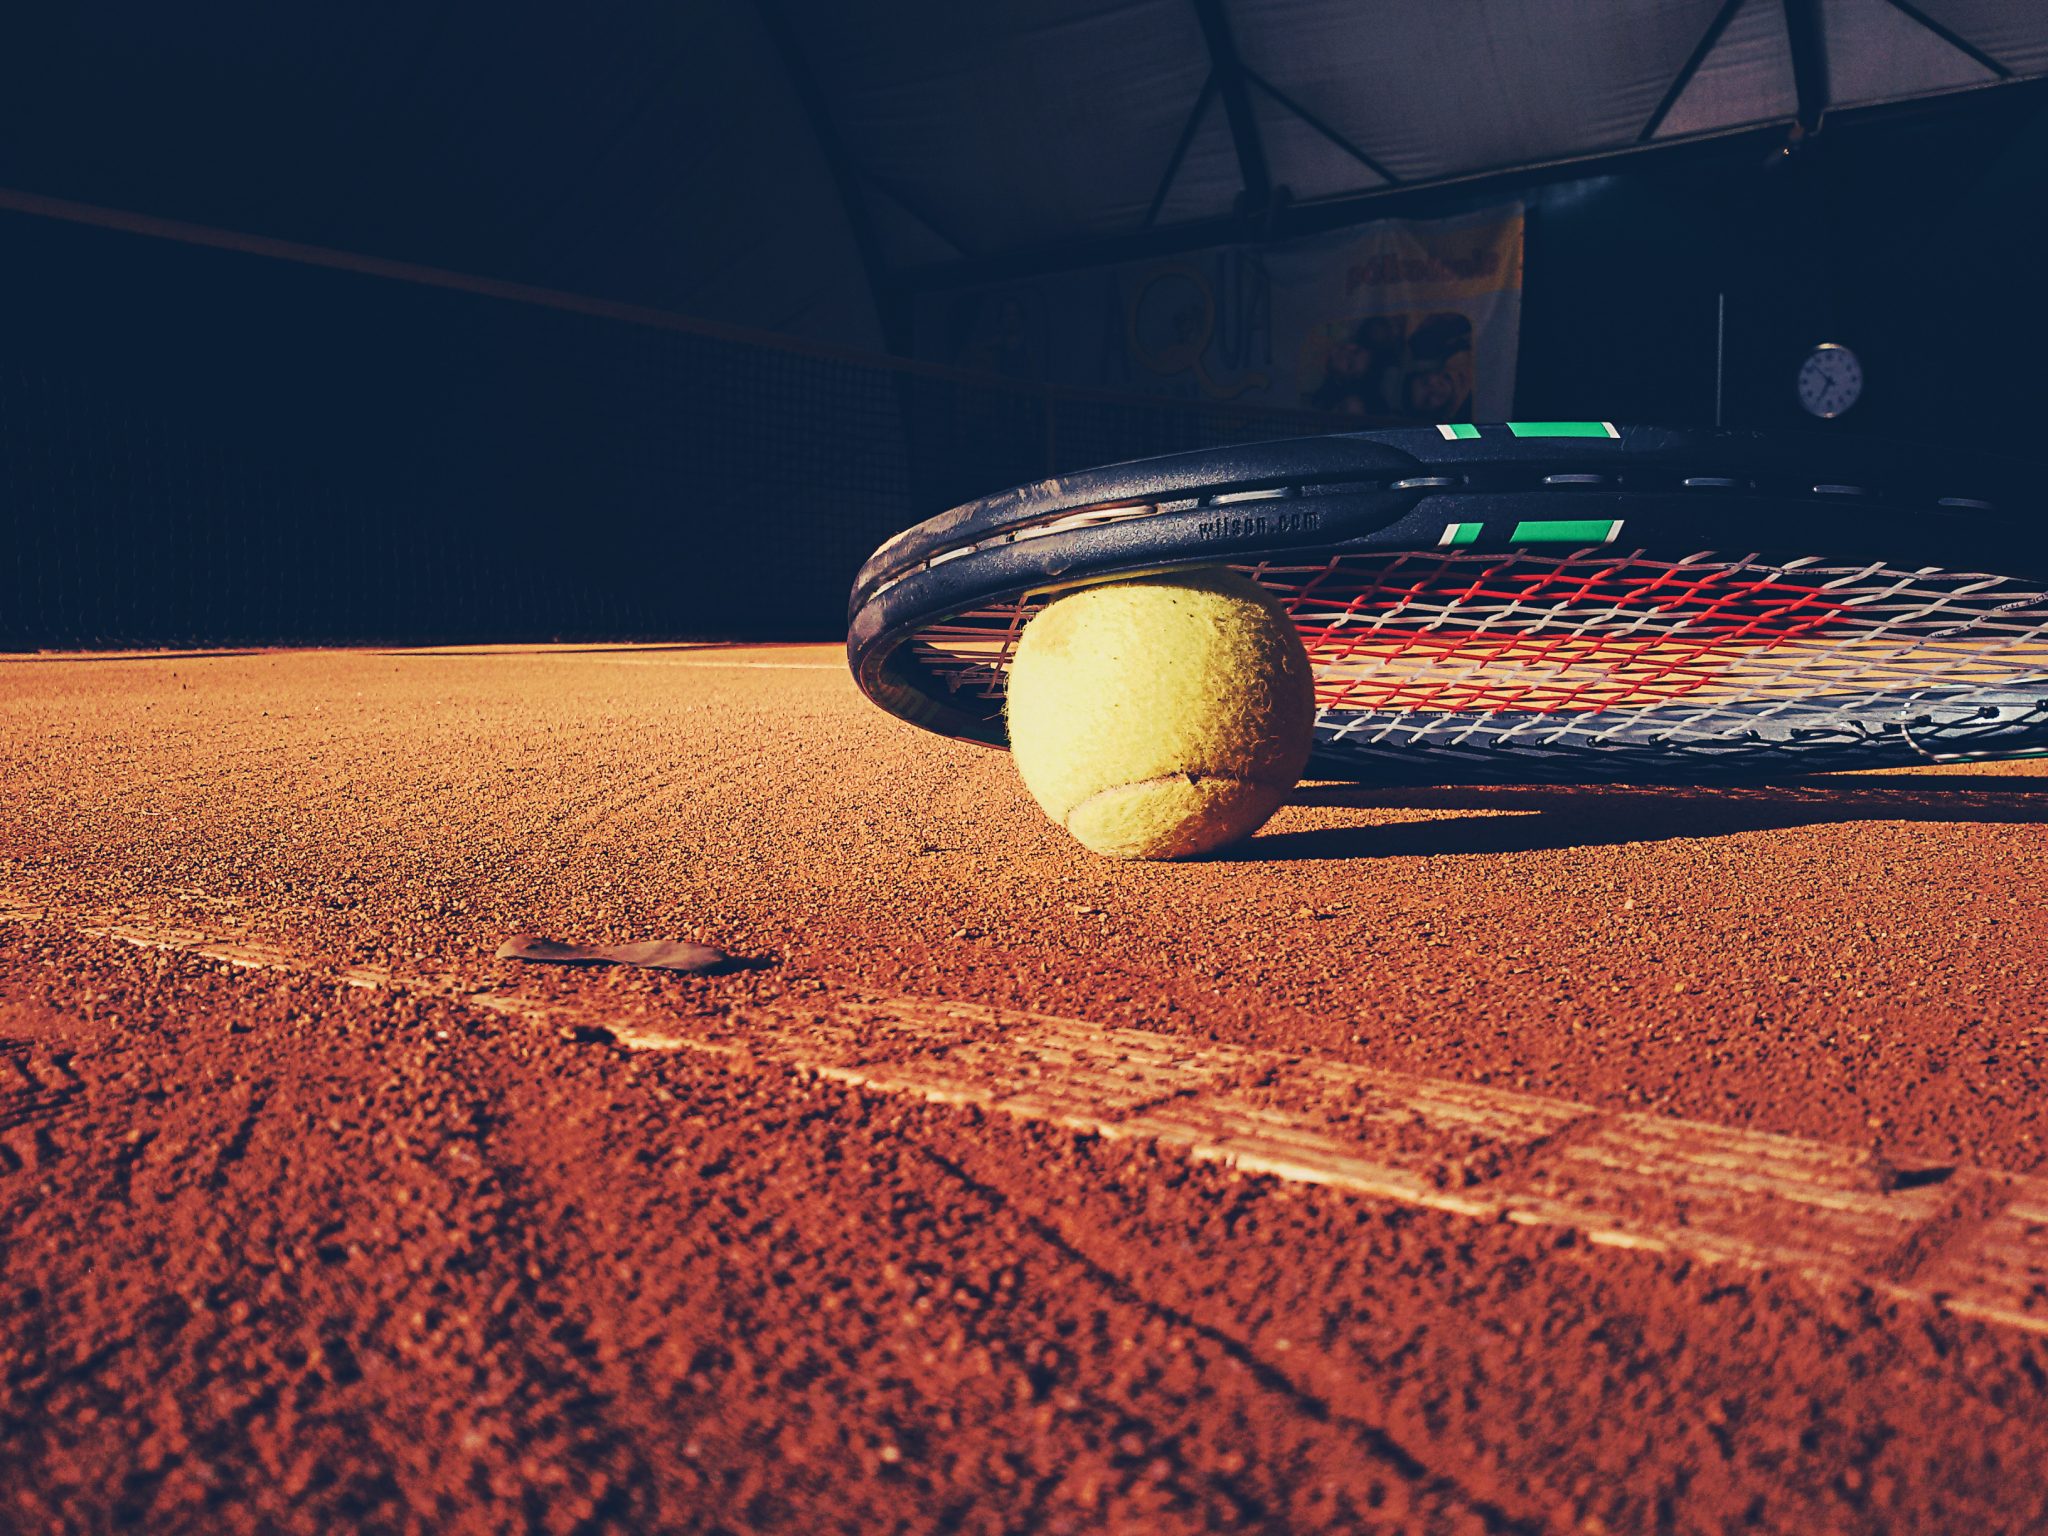 Tennisschläger liegt mit einem Tennisball auf dem Boden eines Tennisplatzes